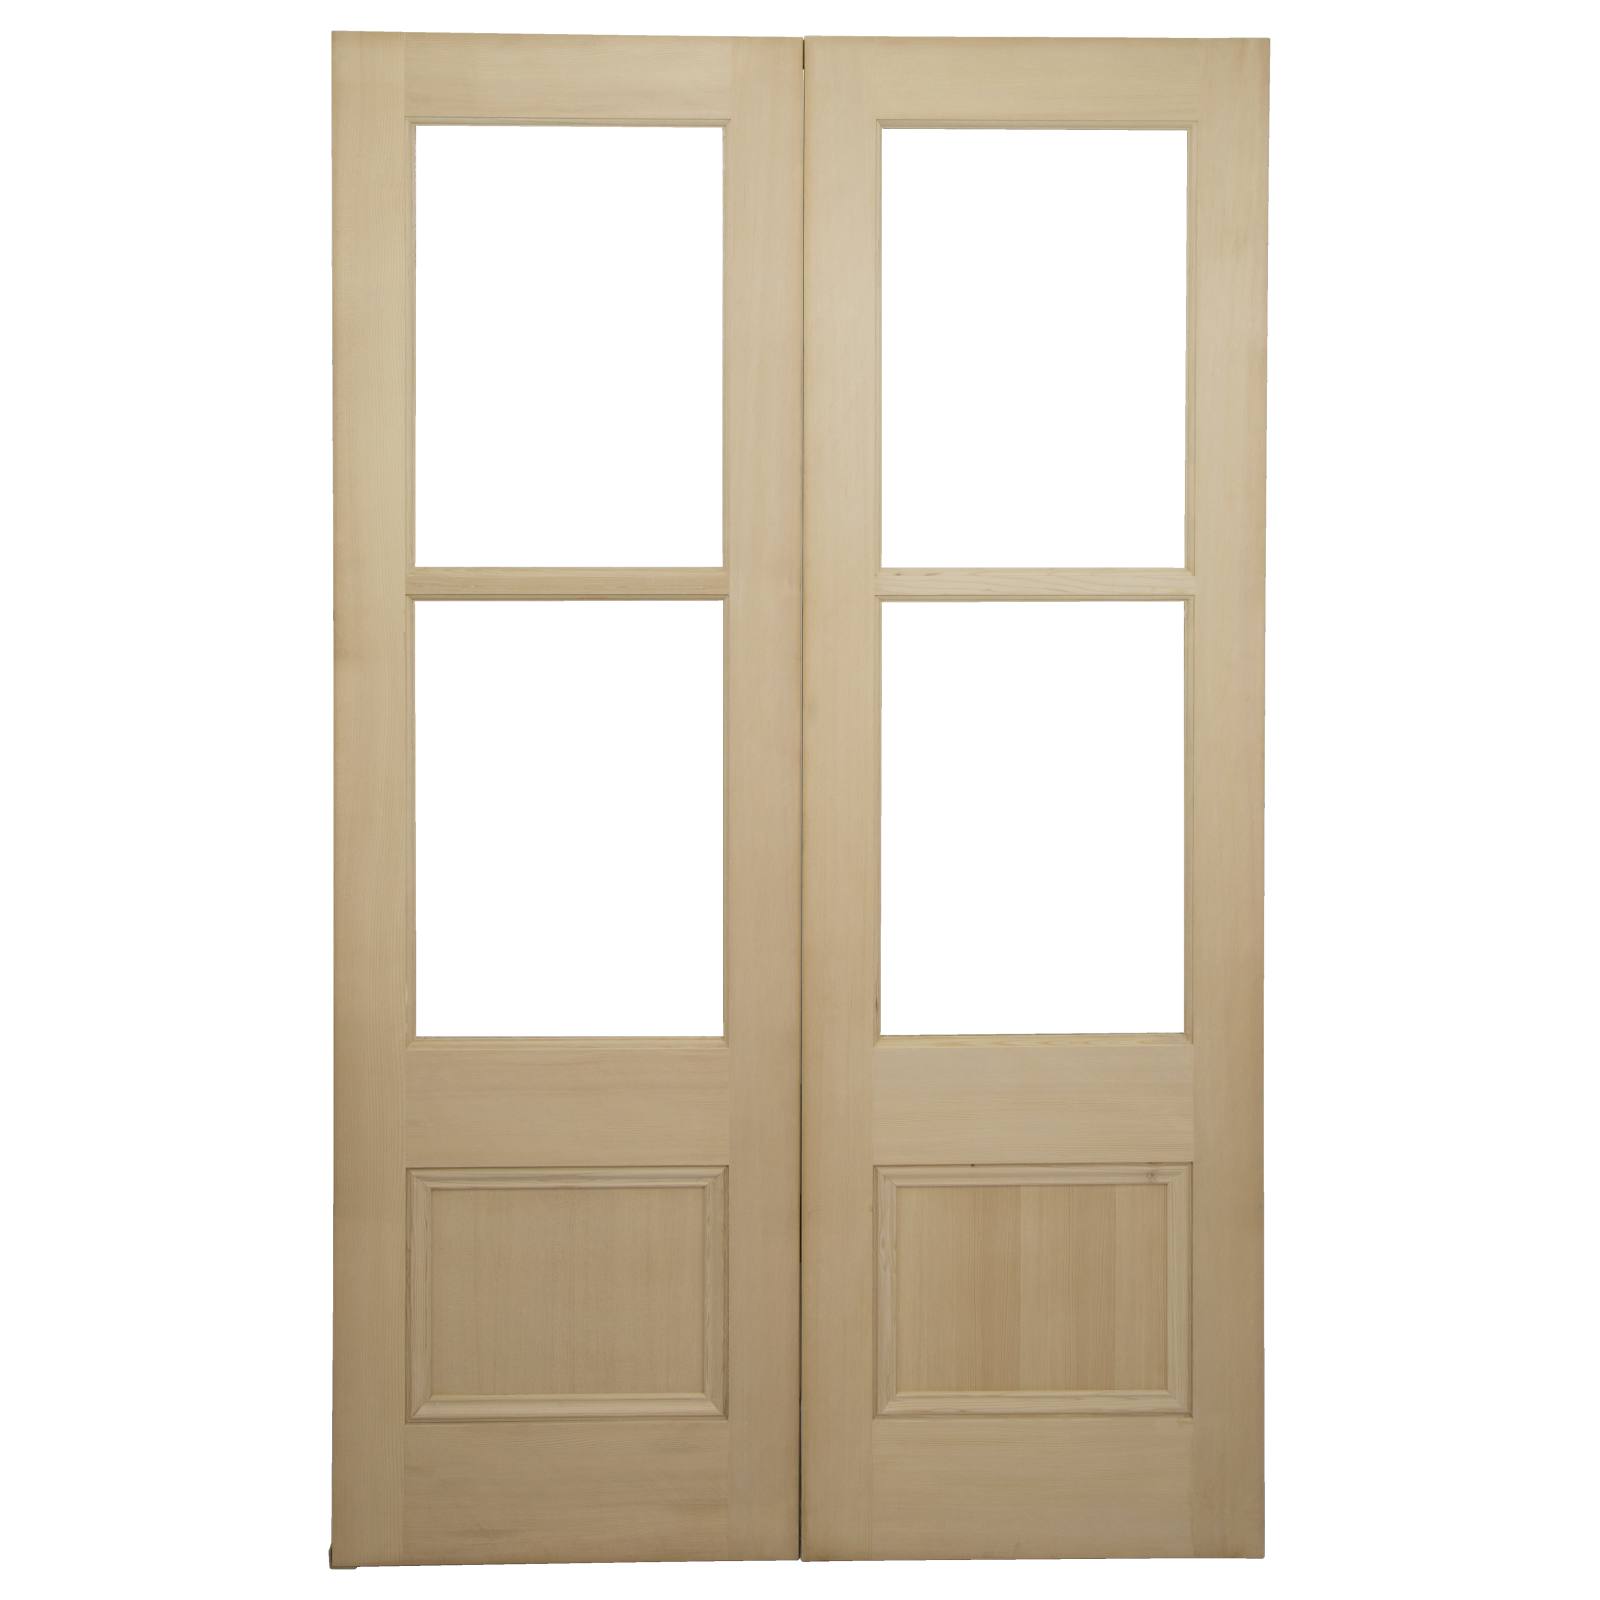 Pair of Internal Glazed French 72cm Doors,1.5mm HV